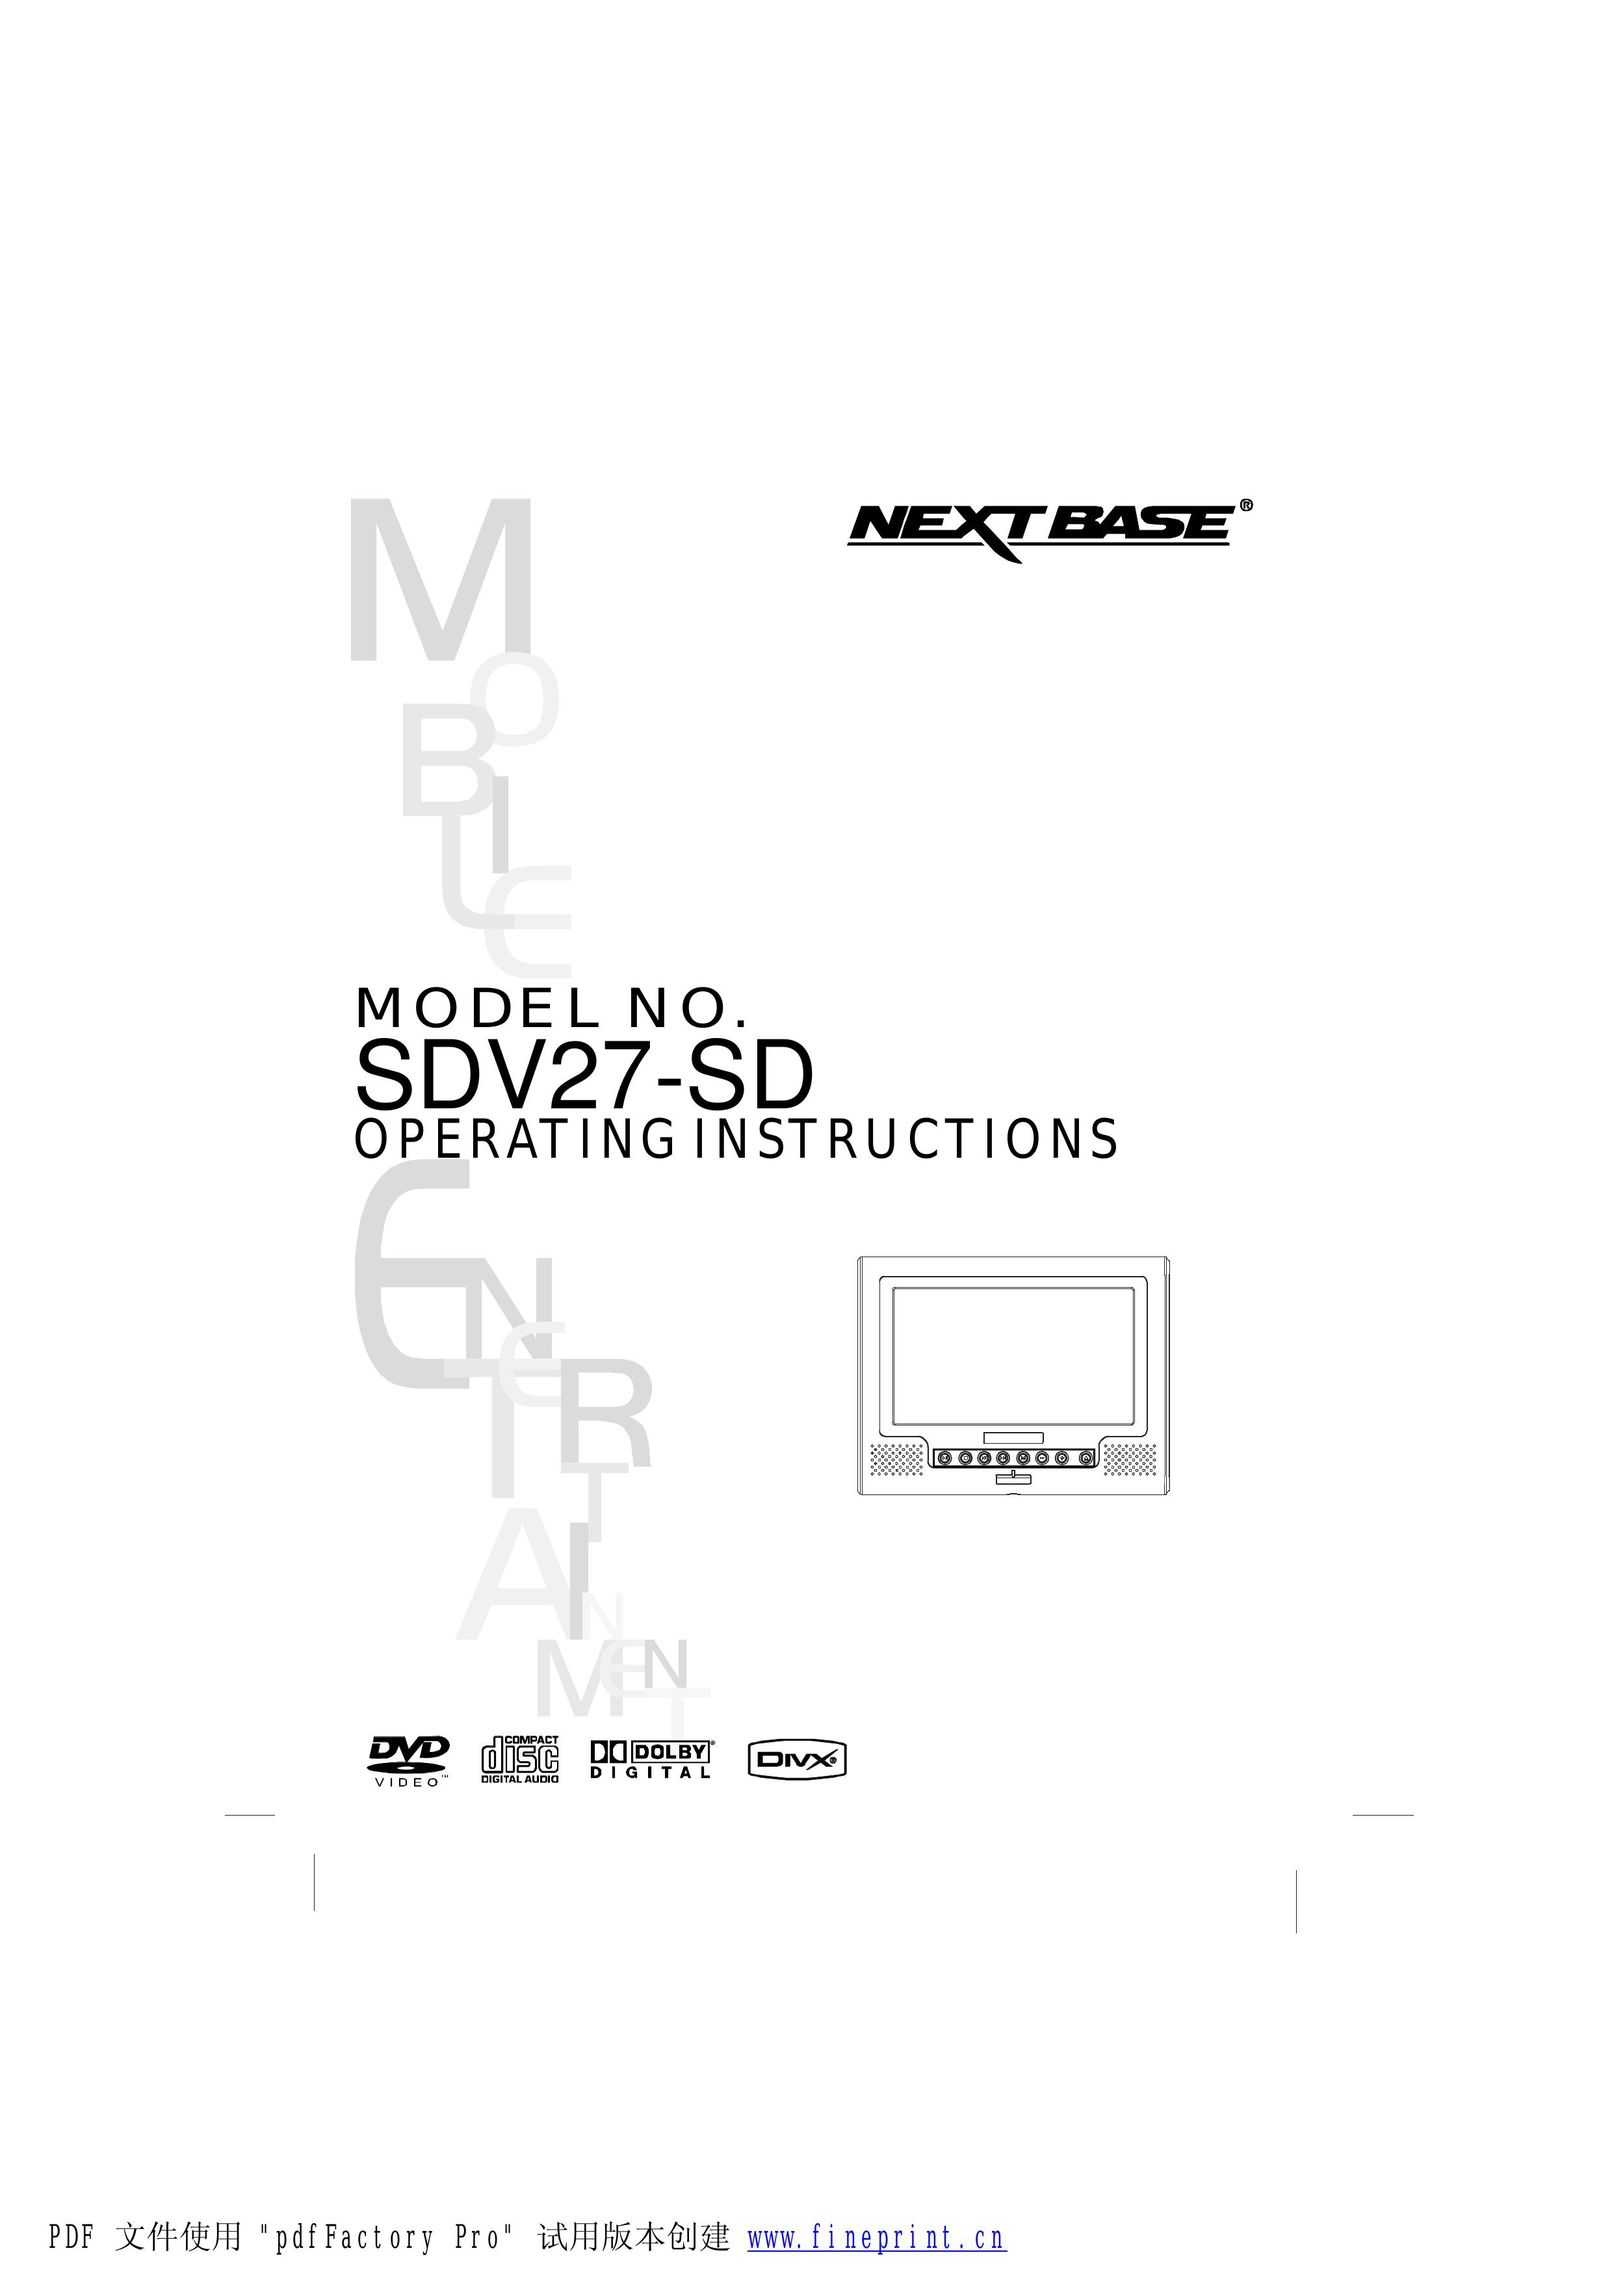 NextBase SDV27-SD Portable DVD Player User Manual